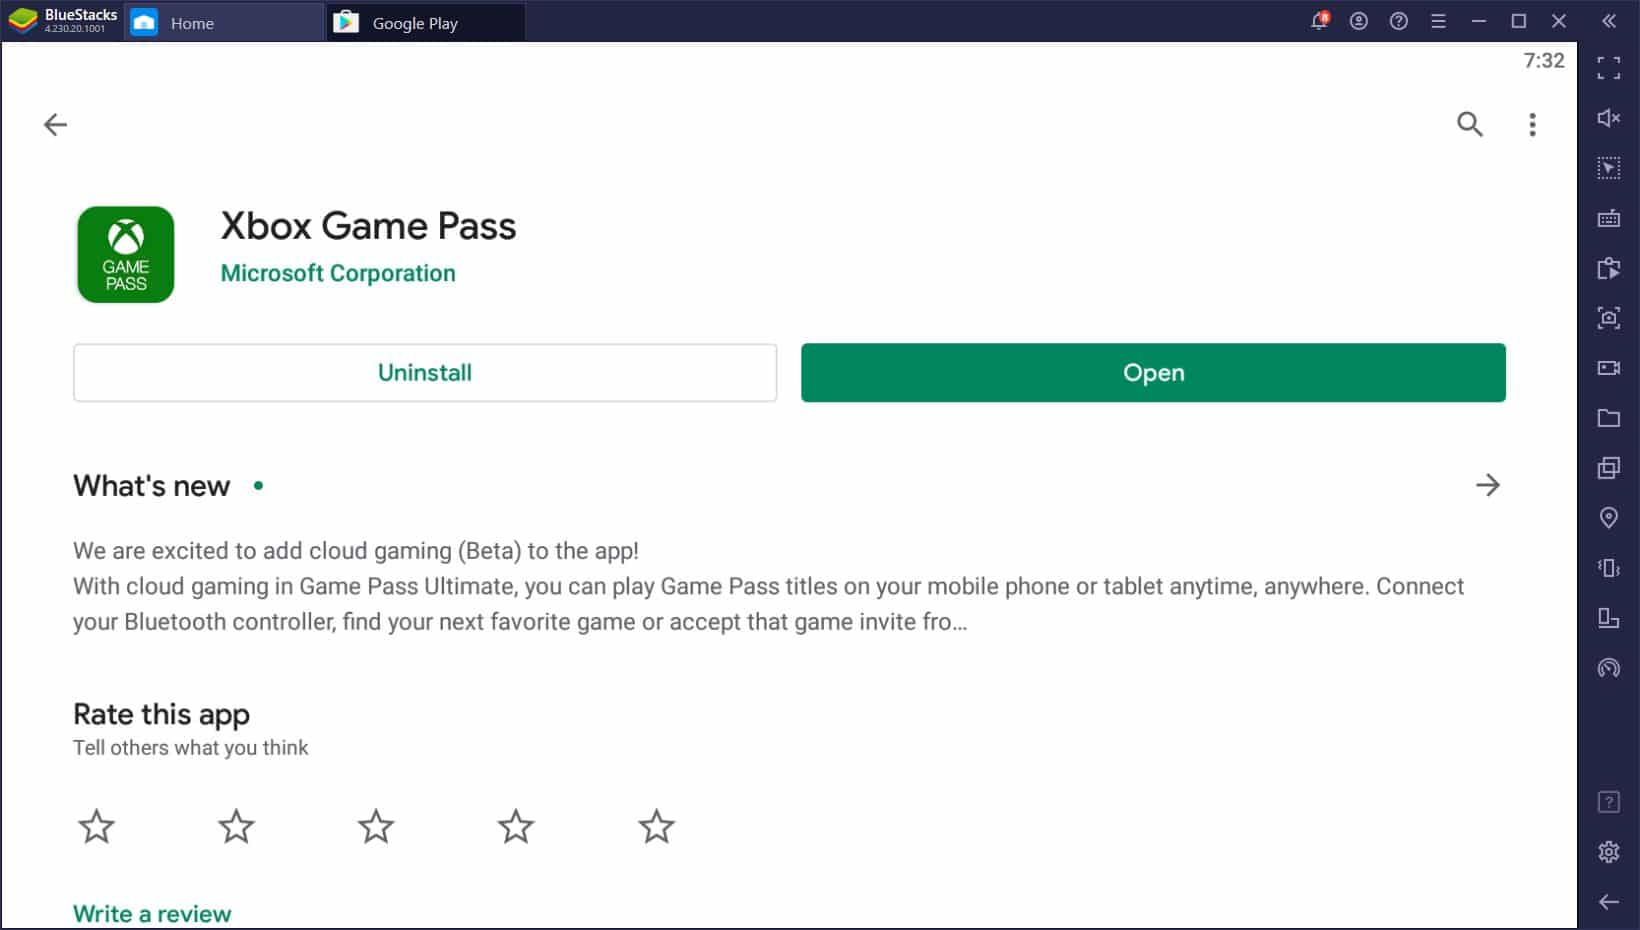 Project xCloud đã ra mắt, chỉ hỗ trợ Android, nhưng bạn có thể chơi game Xbox trên PC dễ dàng với Bluestacks